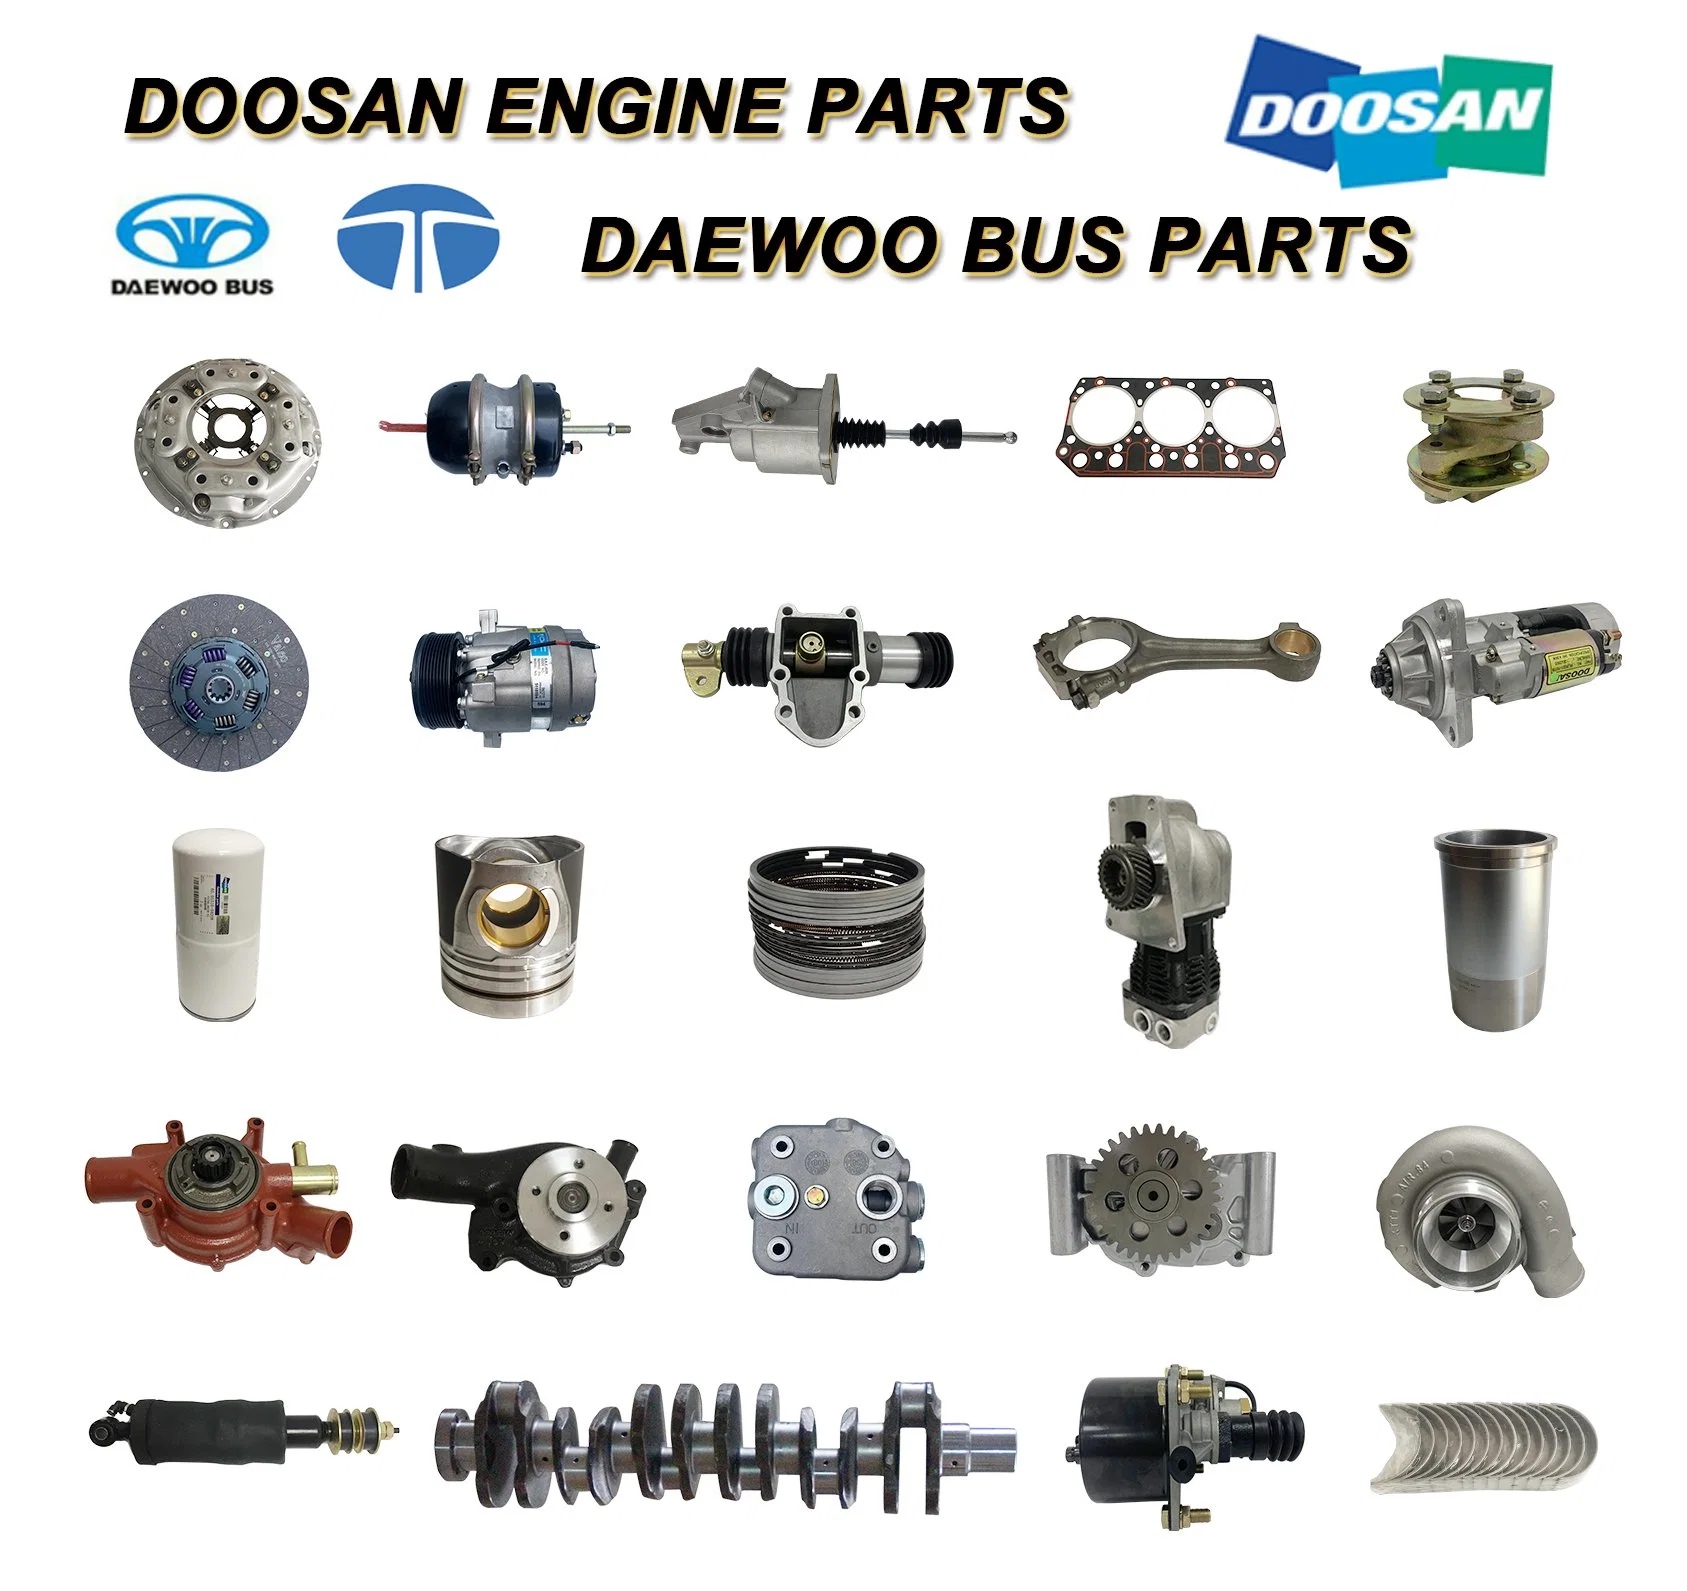 قطع غيار محركات الديزل/البنزين دوسان الأصلية لقطع الغيار الأوتوماتيكية للحفار/الشاحنة/المولد/ناقل Daewoo